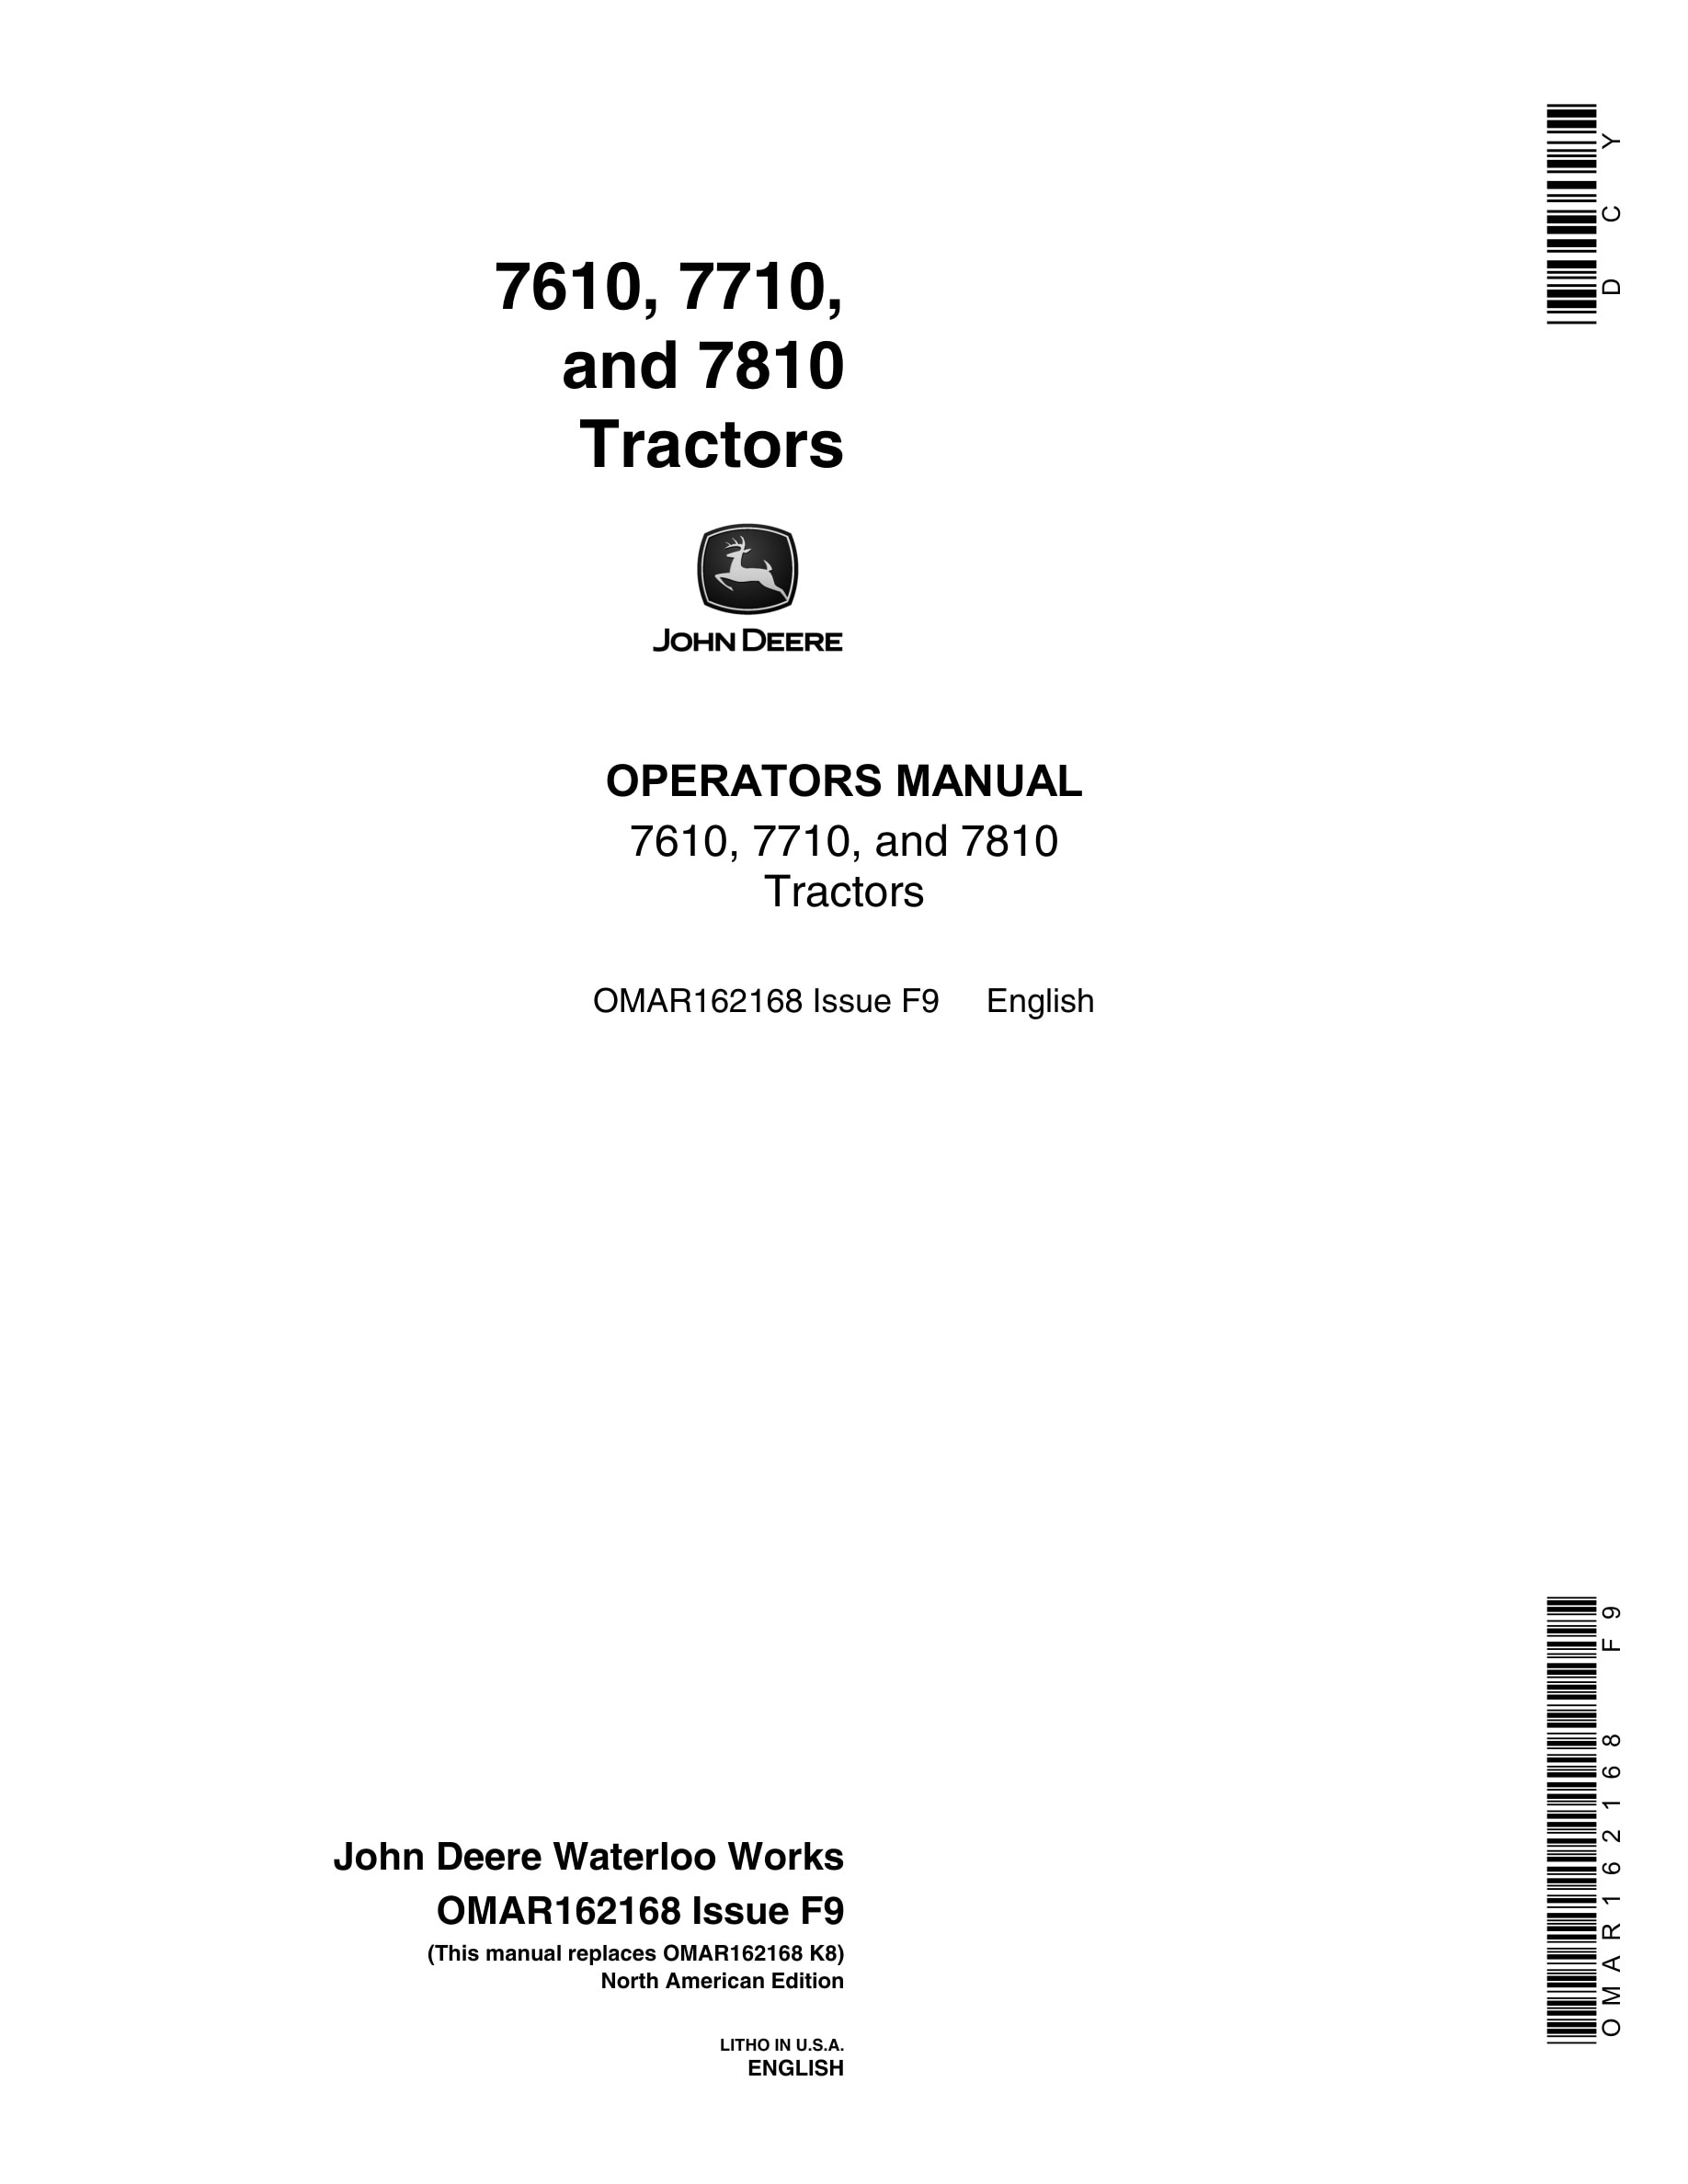 John Deere 7610, 7710, and 7810 Tractor Operator Manual OMAR162168-1